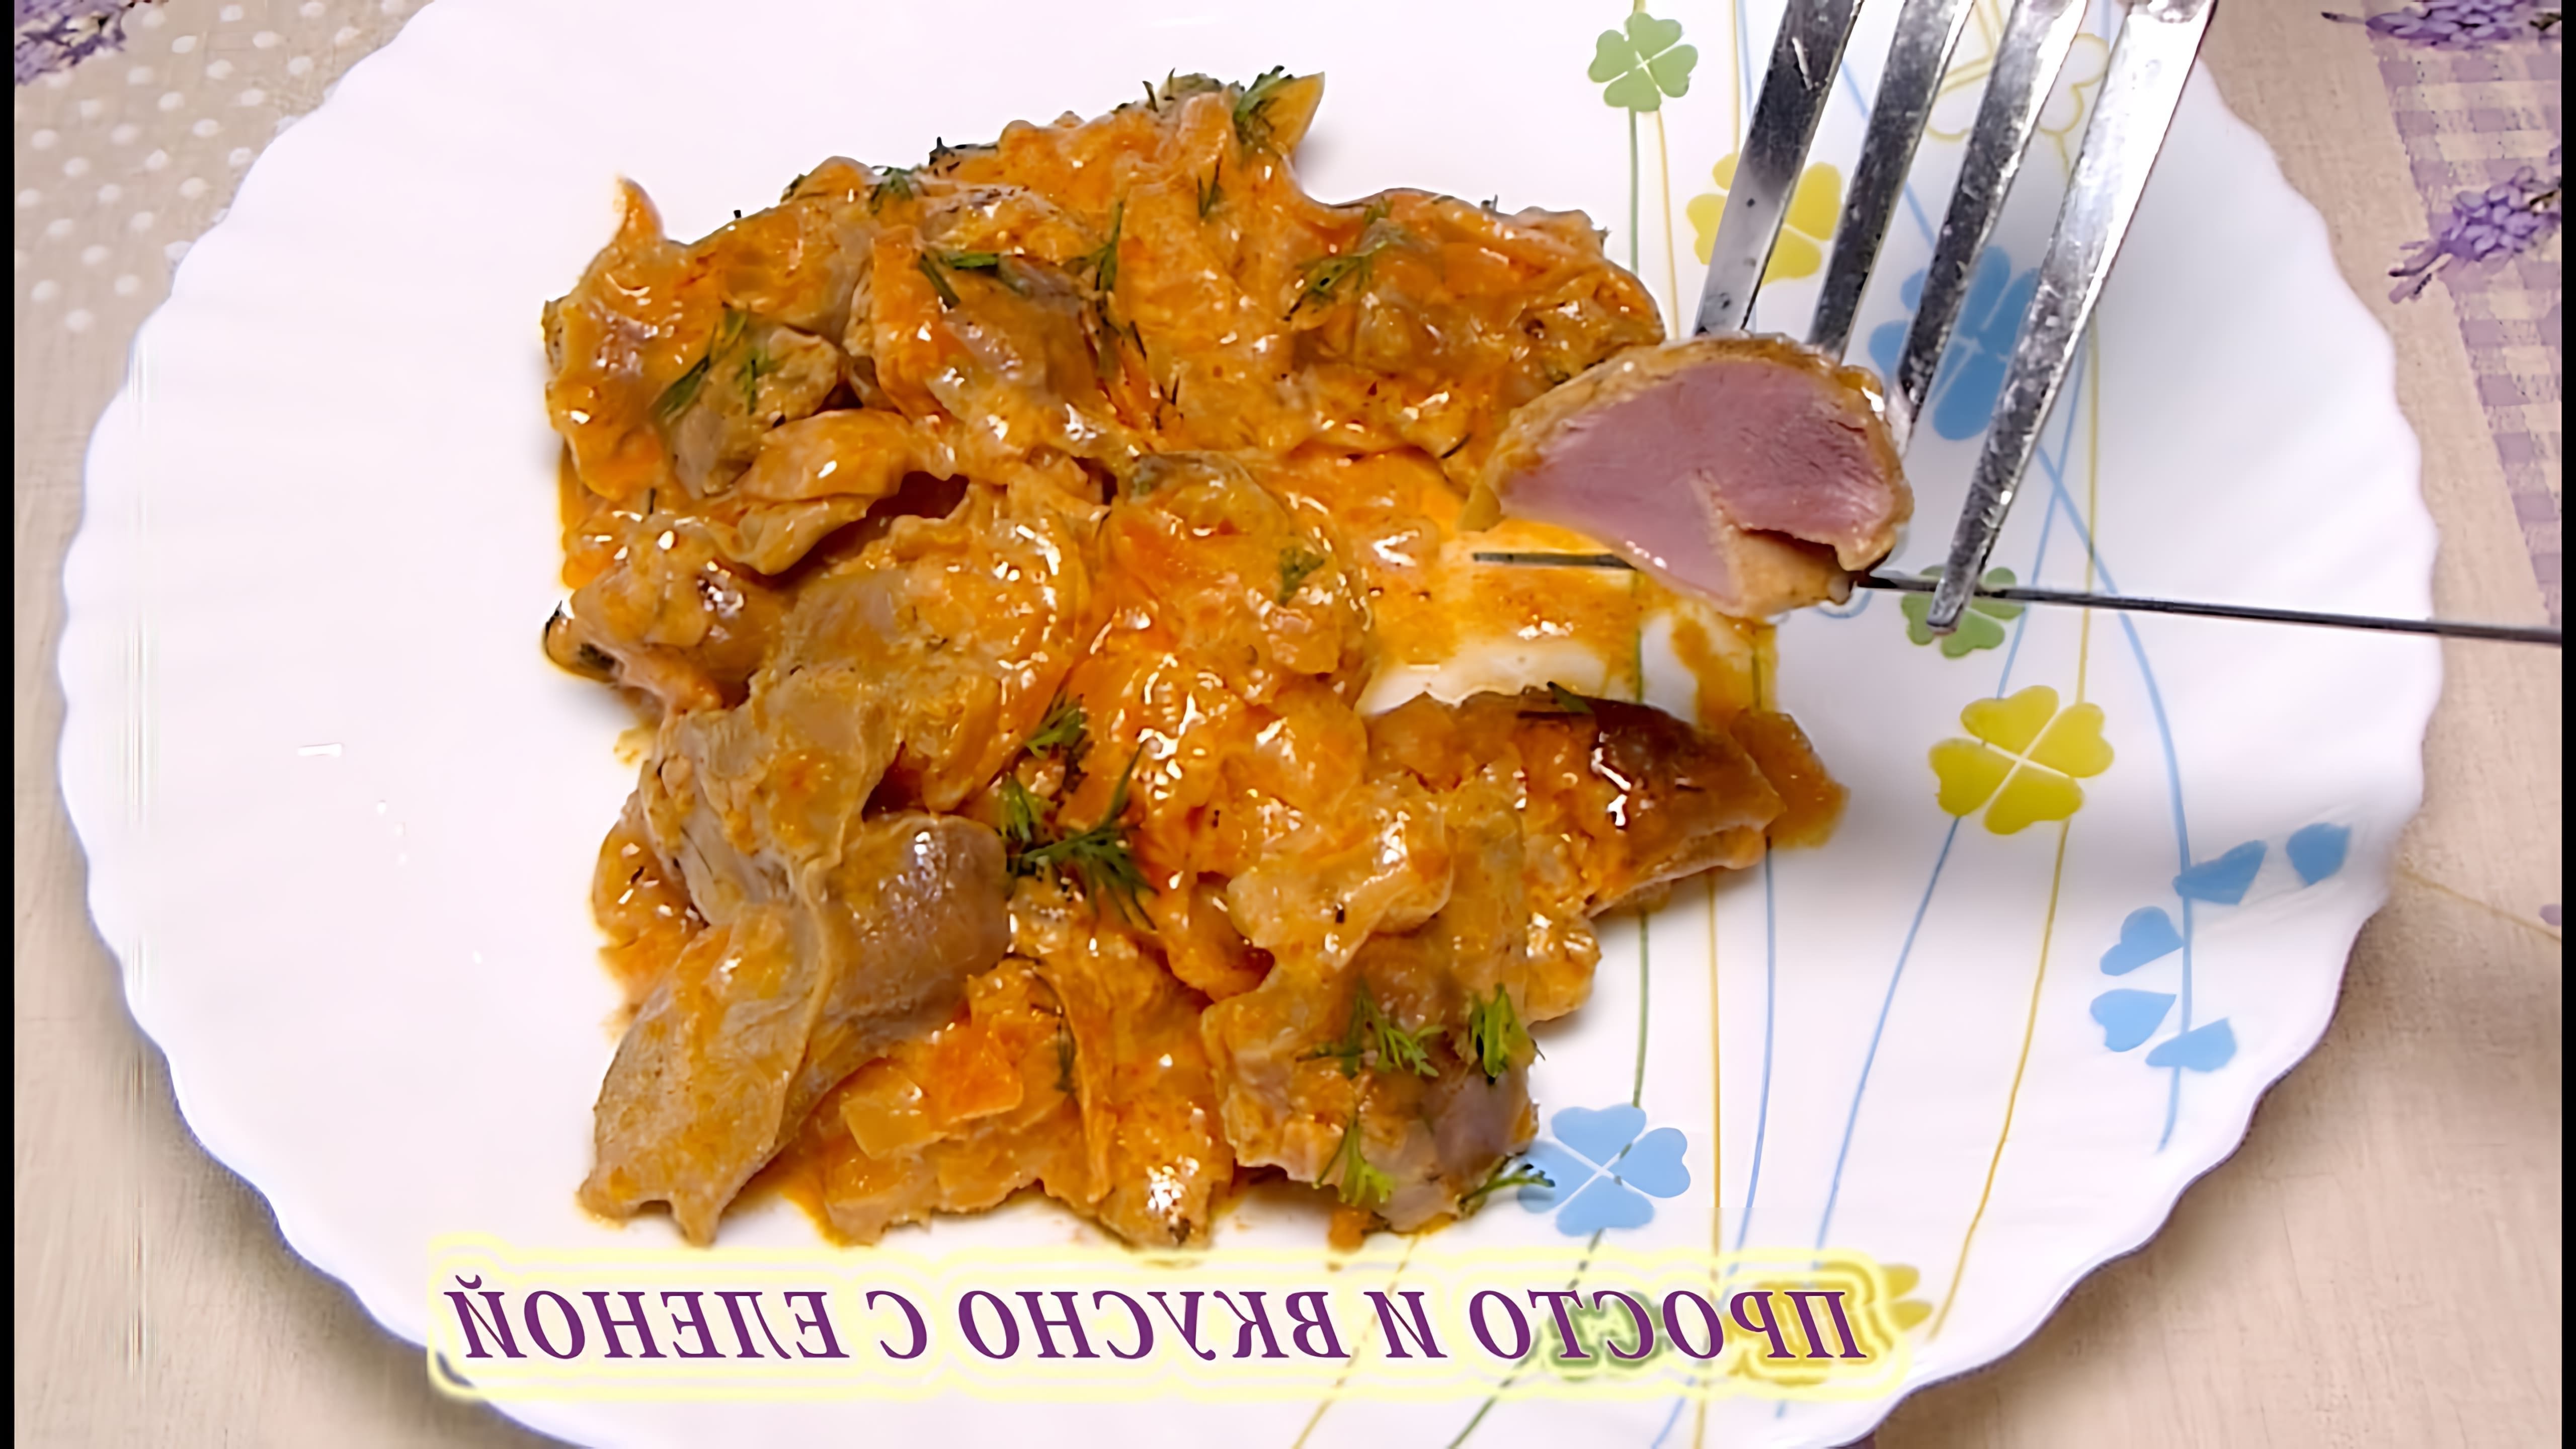 В этом видео демонстрируется рецепт приготовления куриных желудков, которые также известны как "пупки"